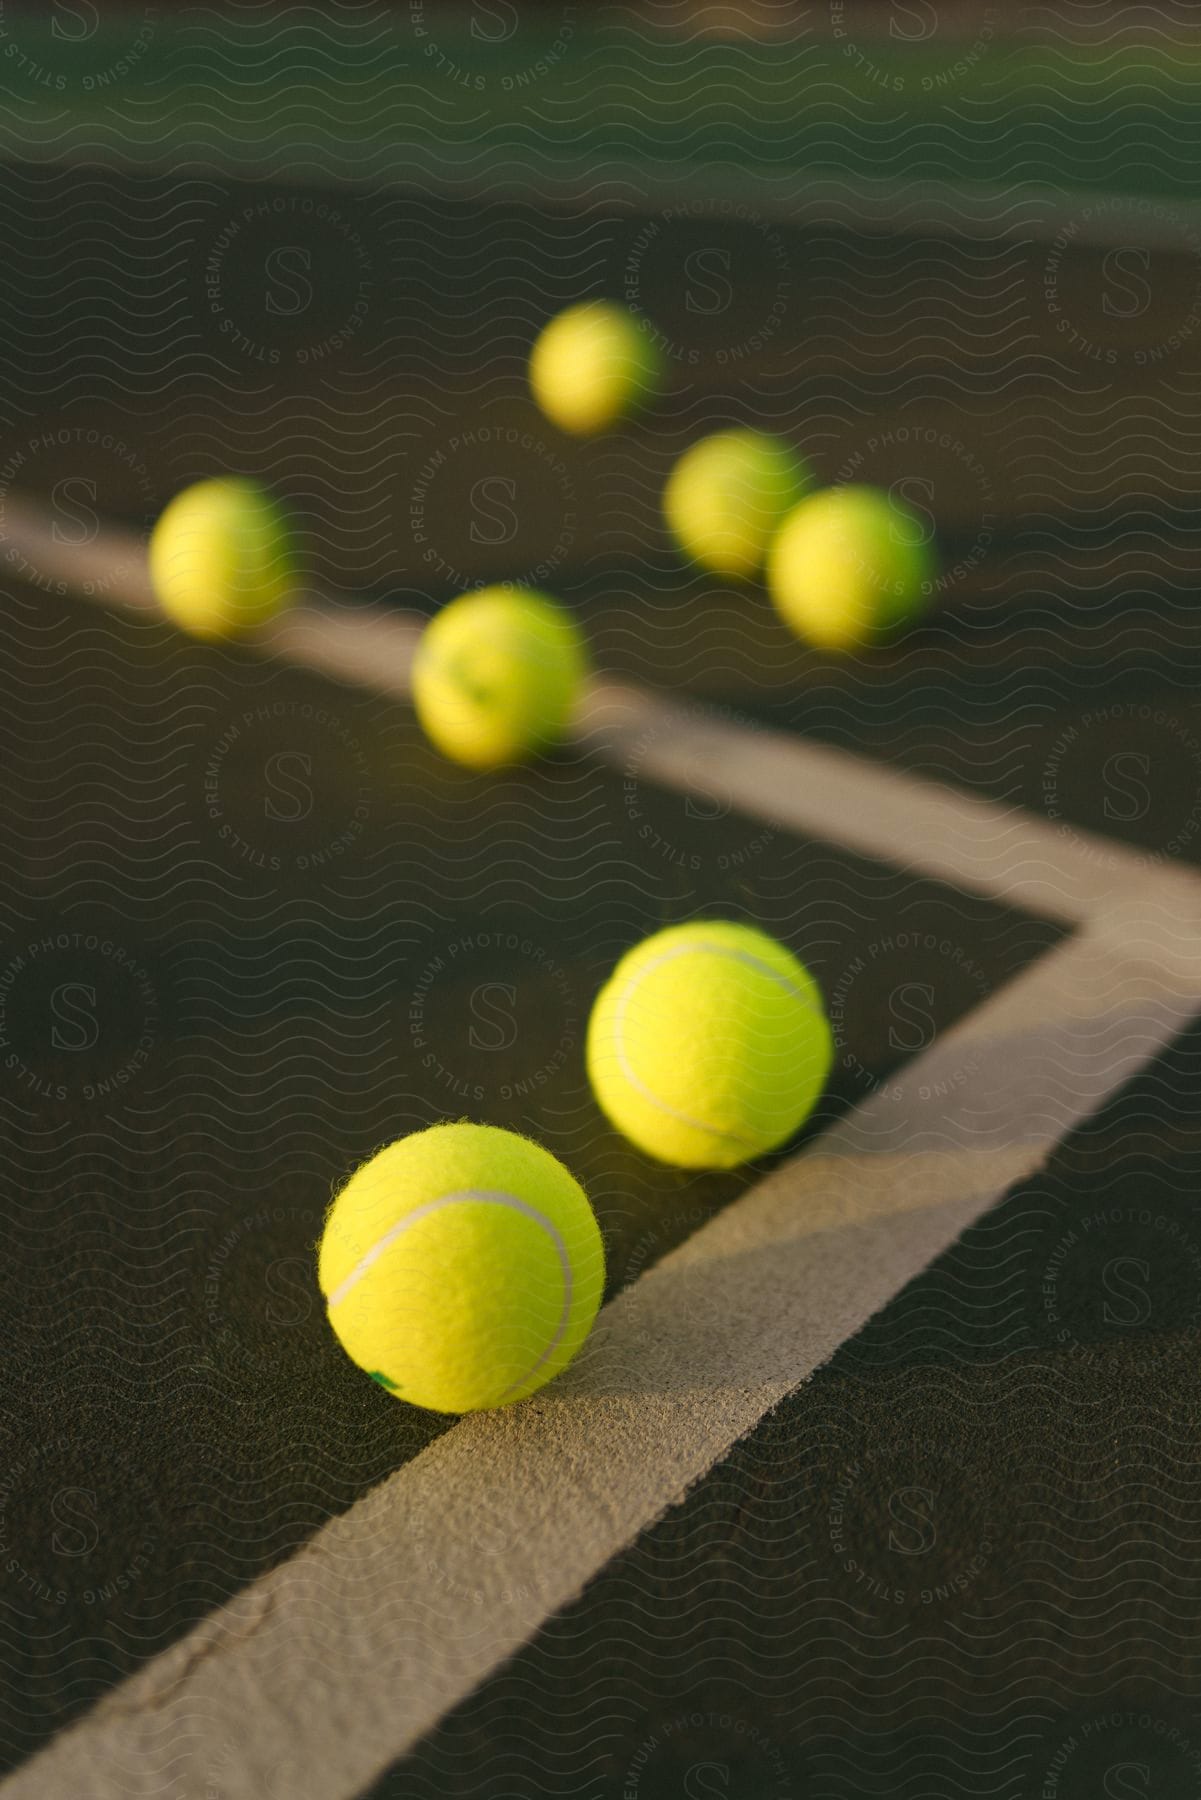 Tennis balls rest on a tennis court